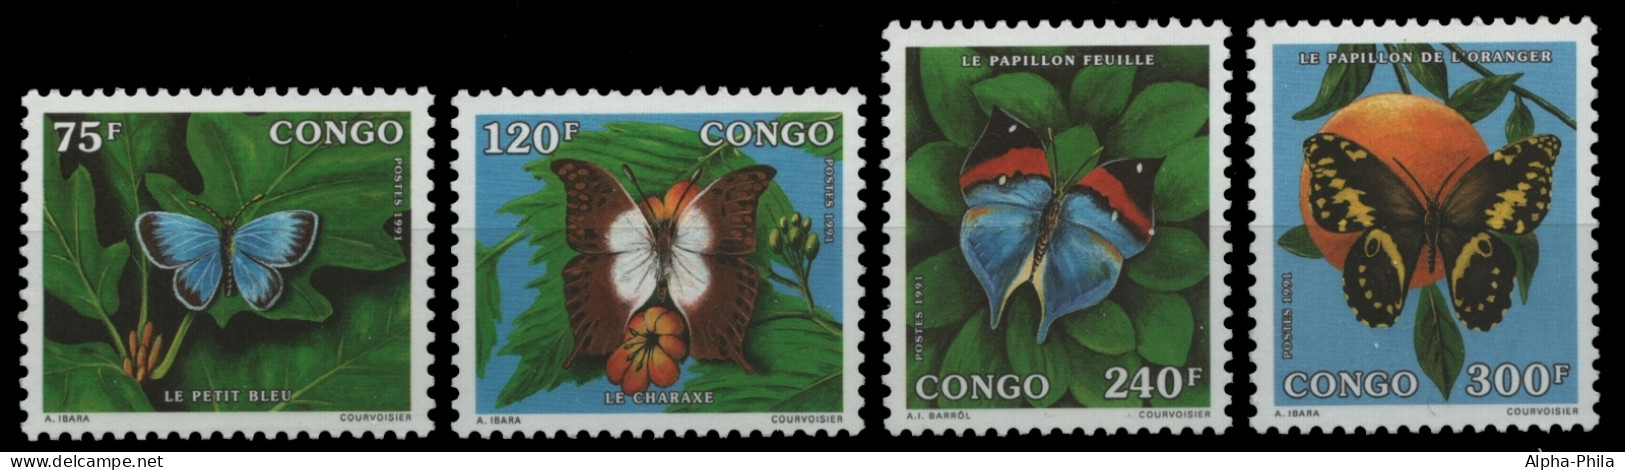 Kongo-Brazzaville 1991 - Mi-Nr. 1293-1296 ** - MNH - Schmetterlinge / Butterflies - Mint/hinged